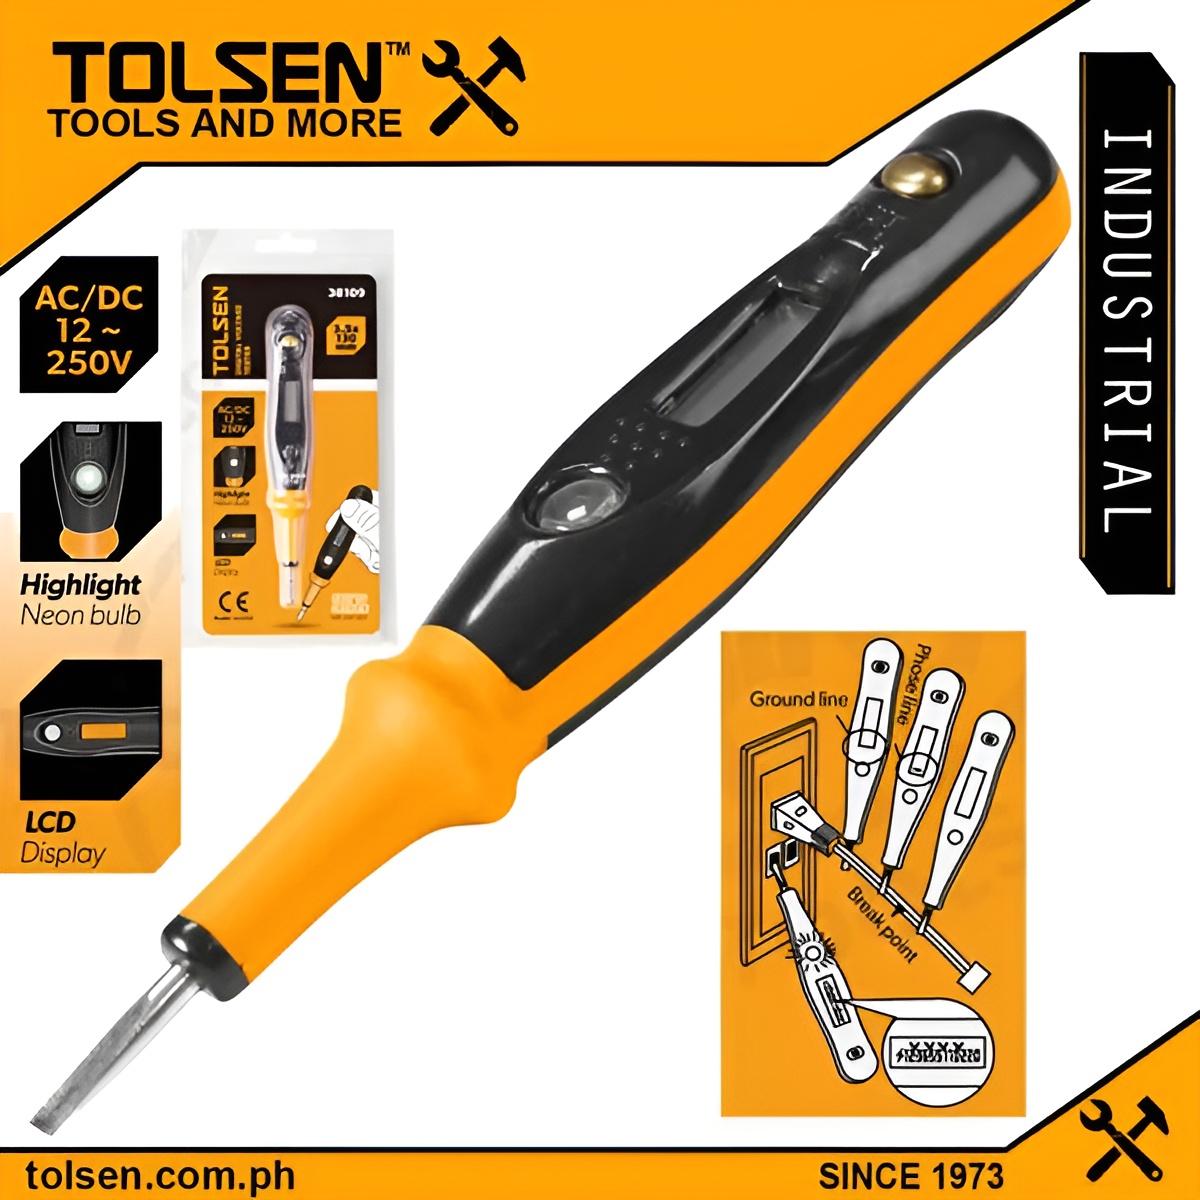 Hình ảnh 1 của mặt hàng Bút thử điện kỹ thuật số Tolsen 38109